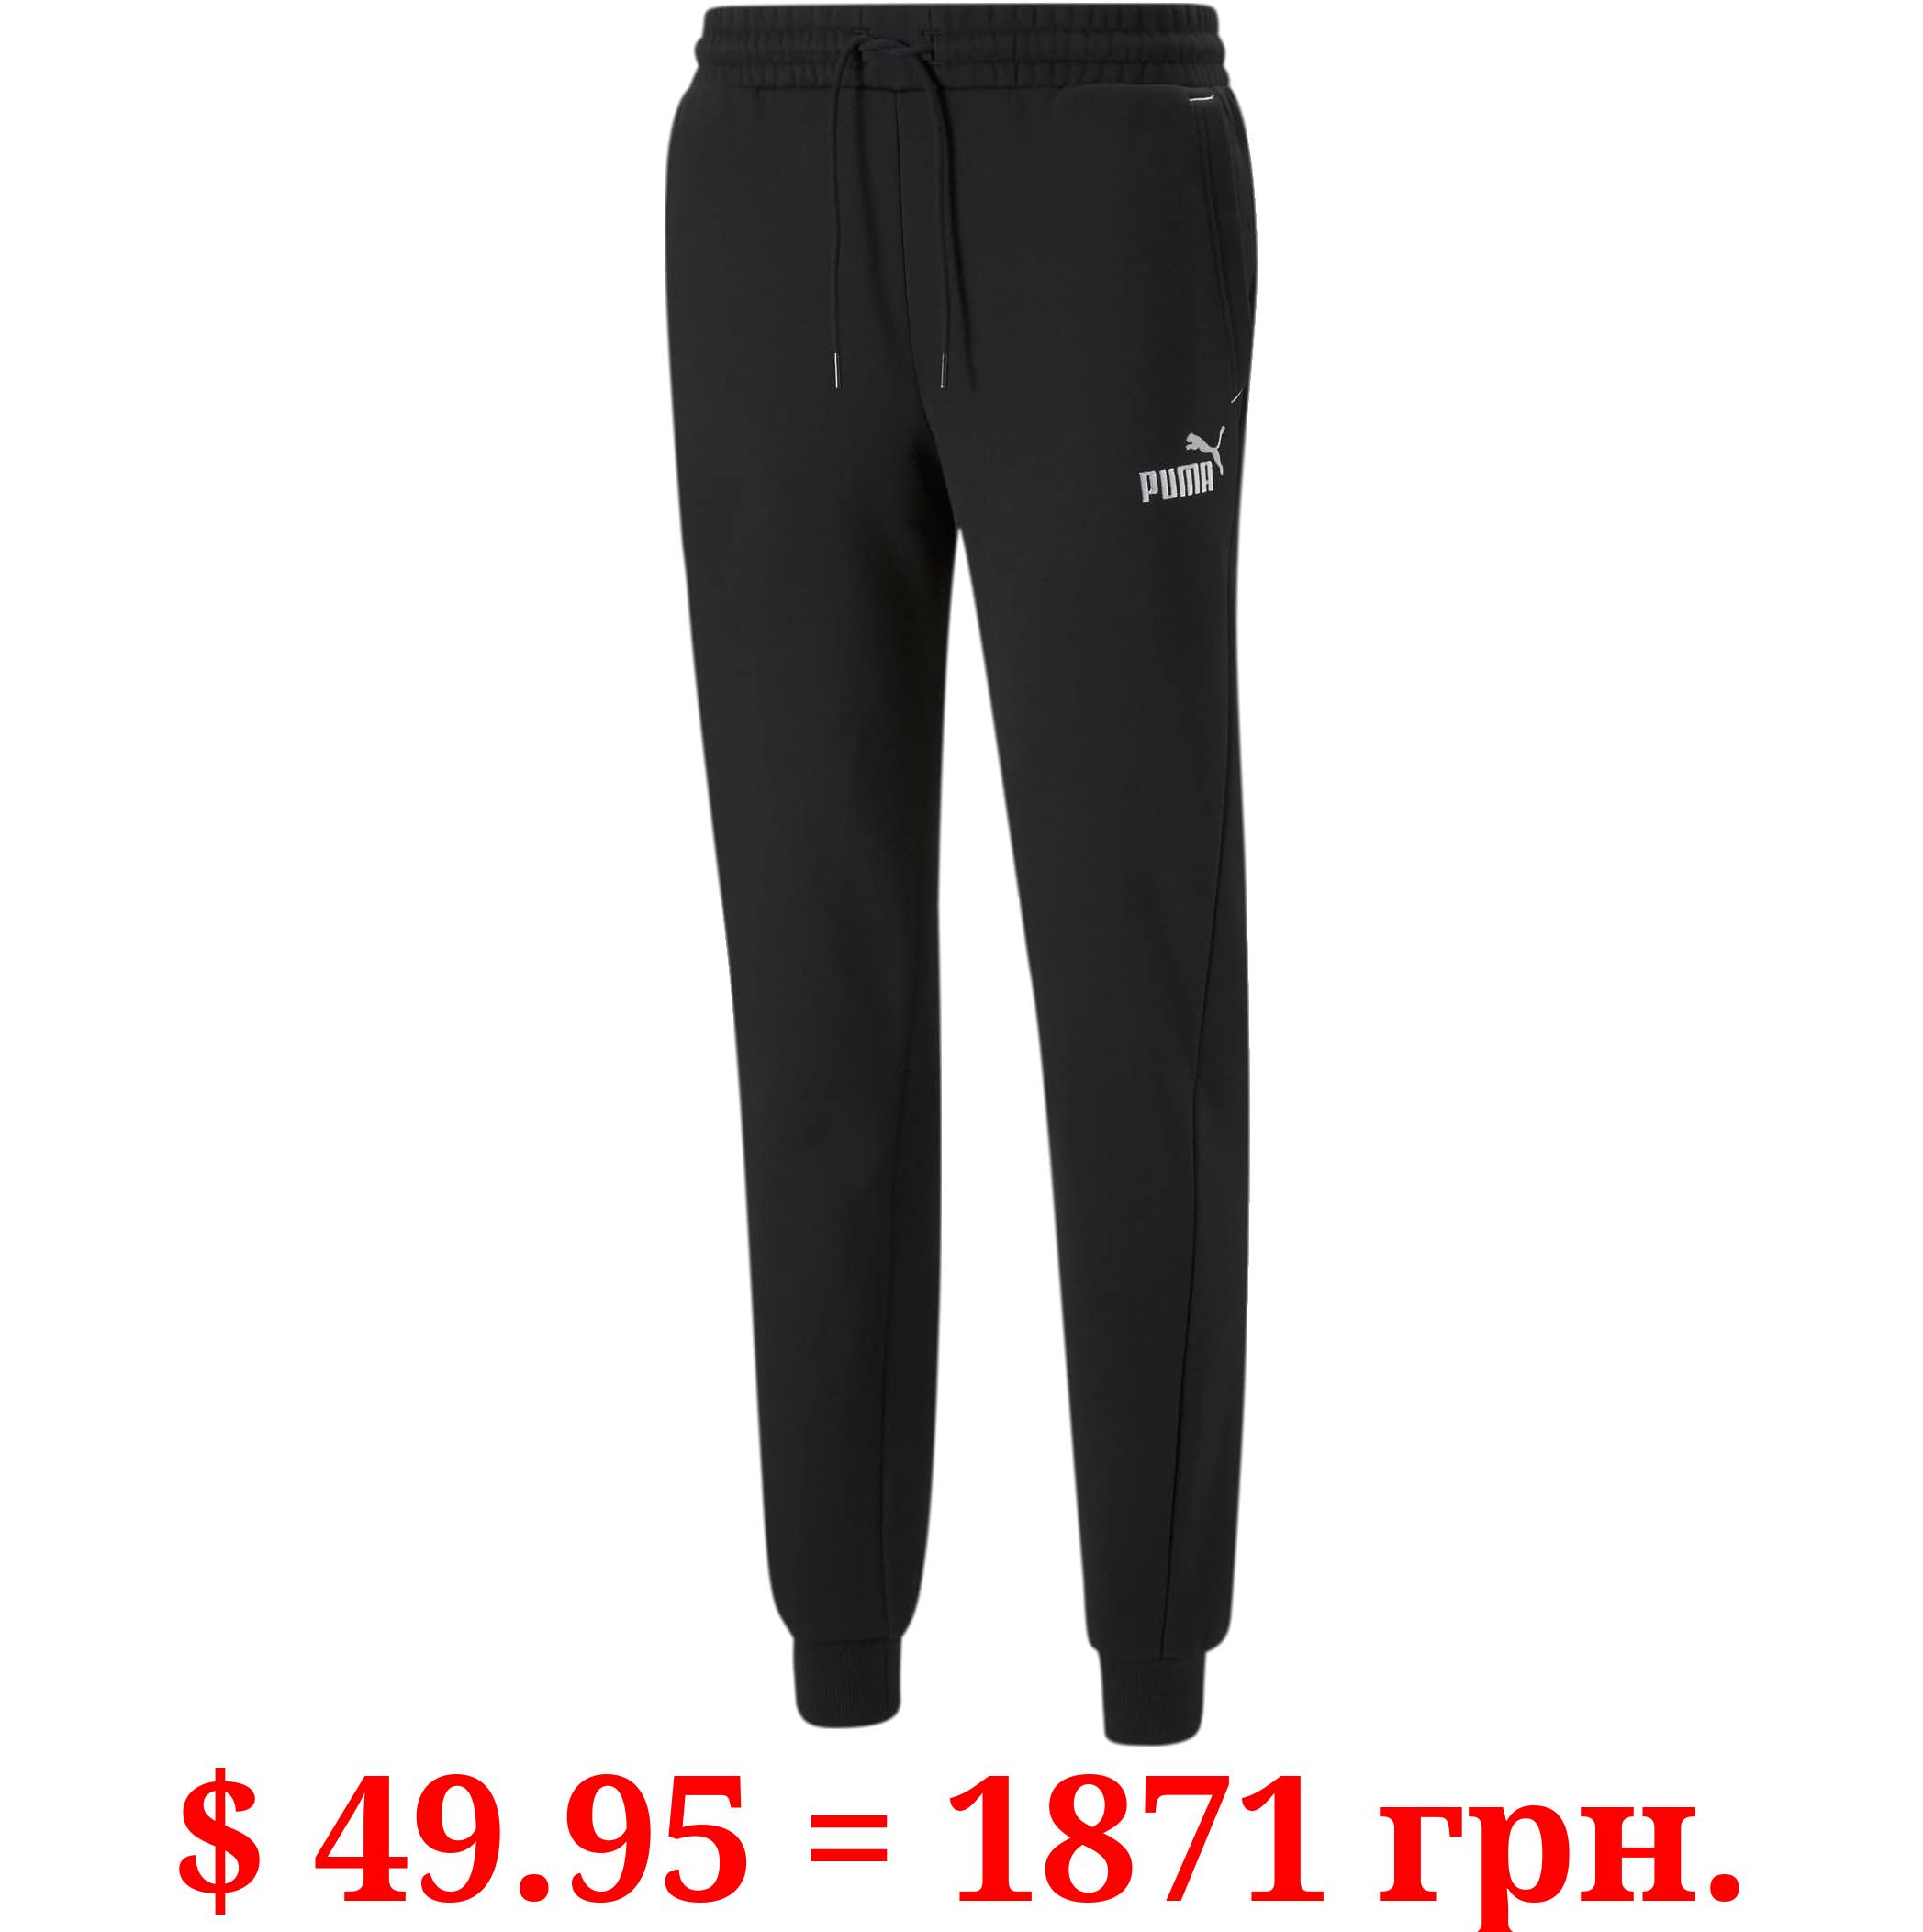 DKNY Boys Sweatpants 2 Pack Basic Active Fleece Jogger Pants (Size: 8-16)  Light Grey Heather 8